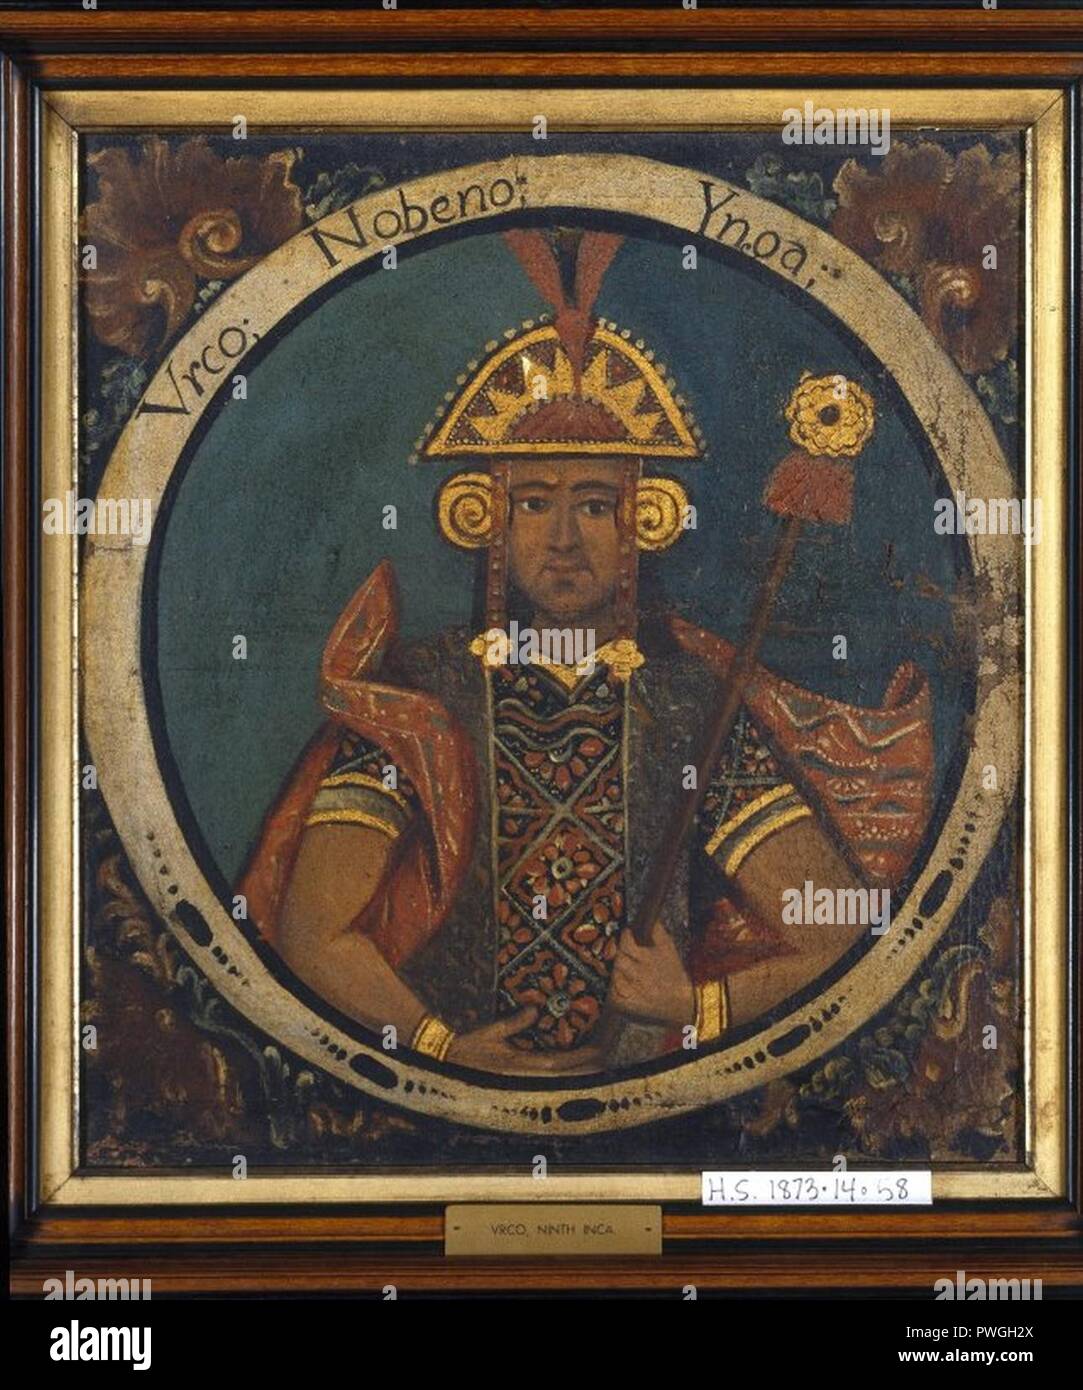 Urco, 9 Inca, 1 von 14 Porträts von Inca Könige - insgesamt. Stockfoto